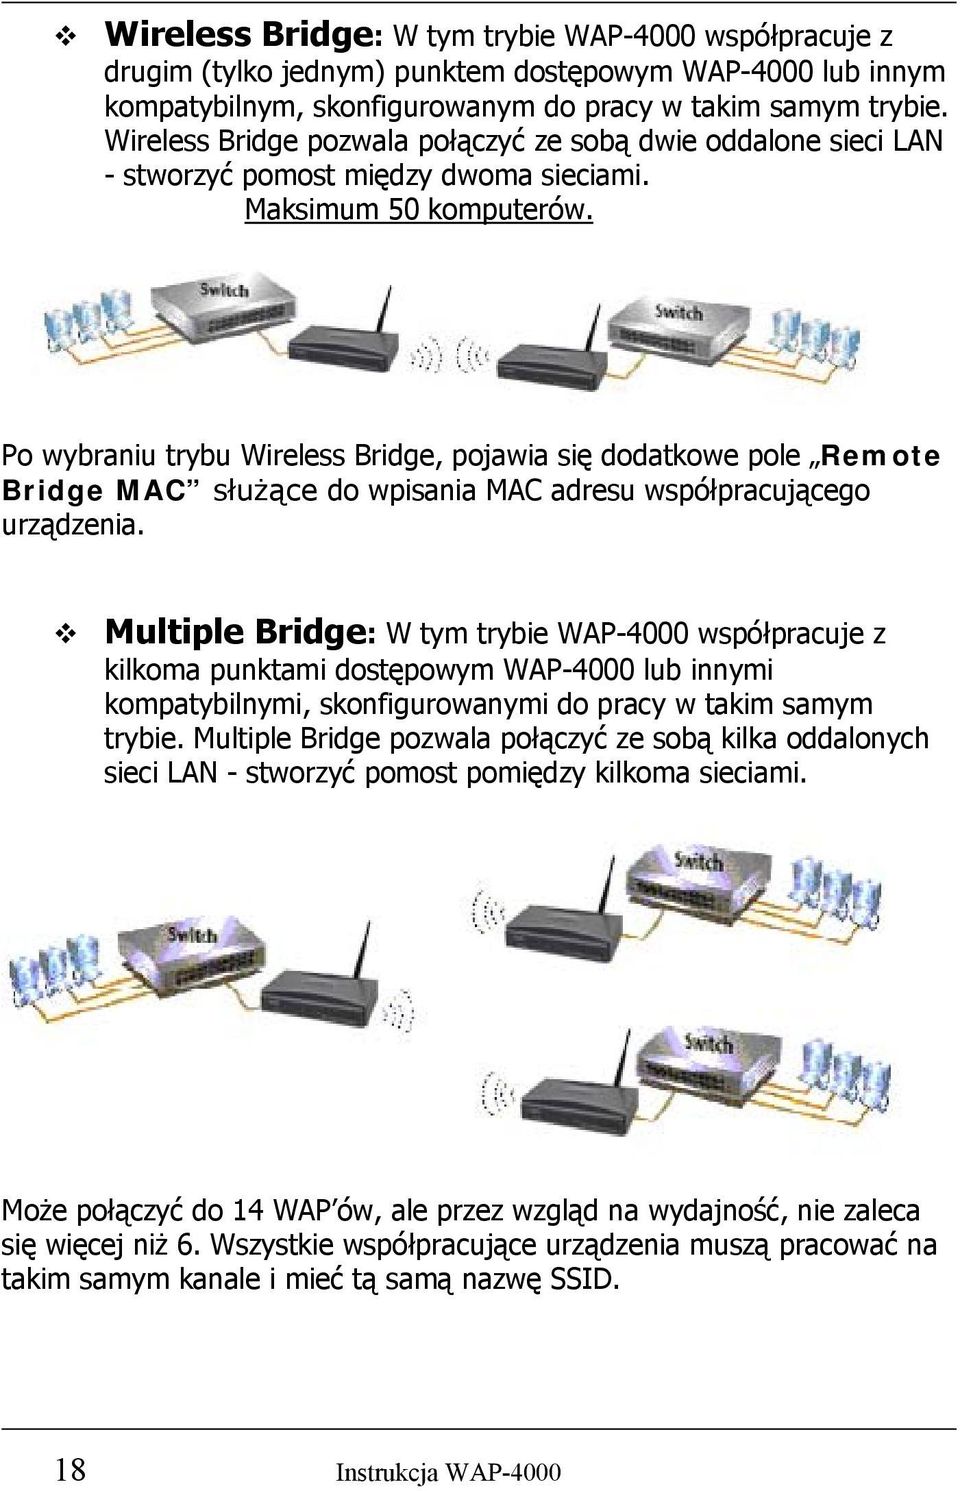 Po wybraniu trybu Wireless Bridge, pojawia się dodatkowe pole Remote Bridge MAC służące do wpisania MAC adresu współpracującego urządzenia.